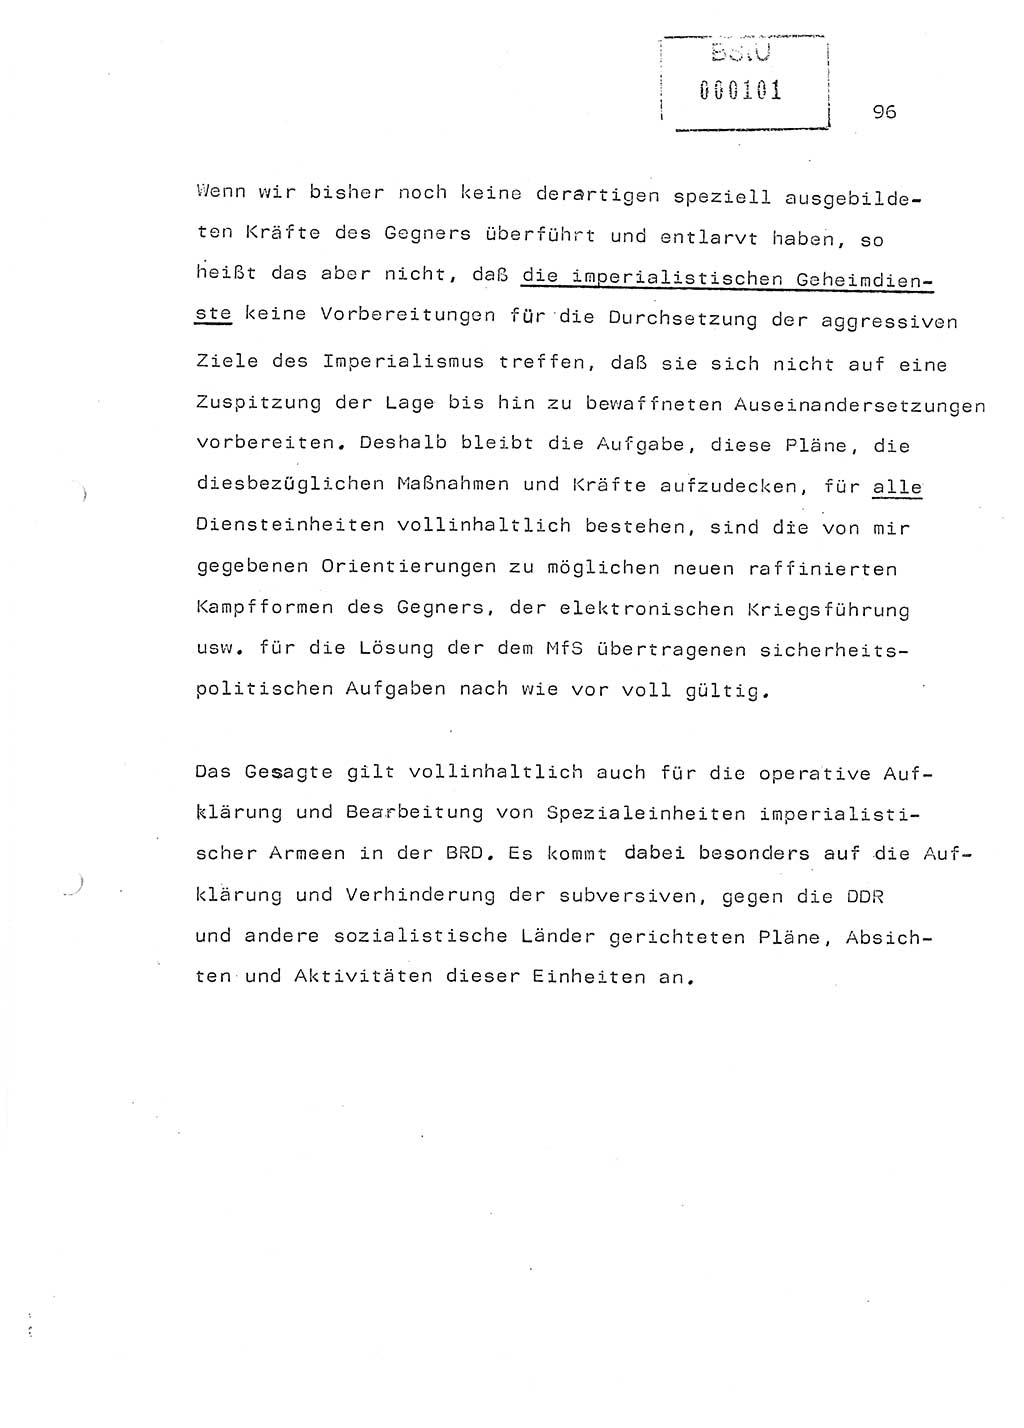 Referat (Generaloberst Erich Mielke) auf der Zentralen Dienstkonferenz am 24.5.1979 [Ministerium für Staatssicherheit (MfS), Deutsche Demokratische Republik (DDR), Der Minister], Berlin 1979, Seite 96 (Ref. DK DDR MfS Min. /79 1979, S. 96)